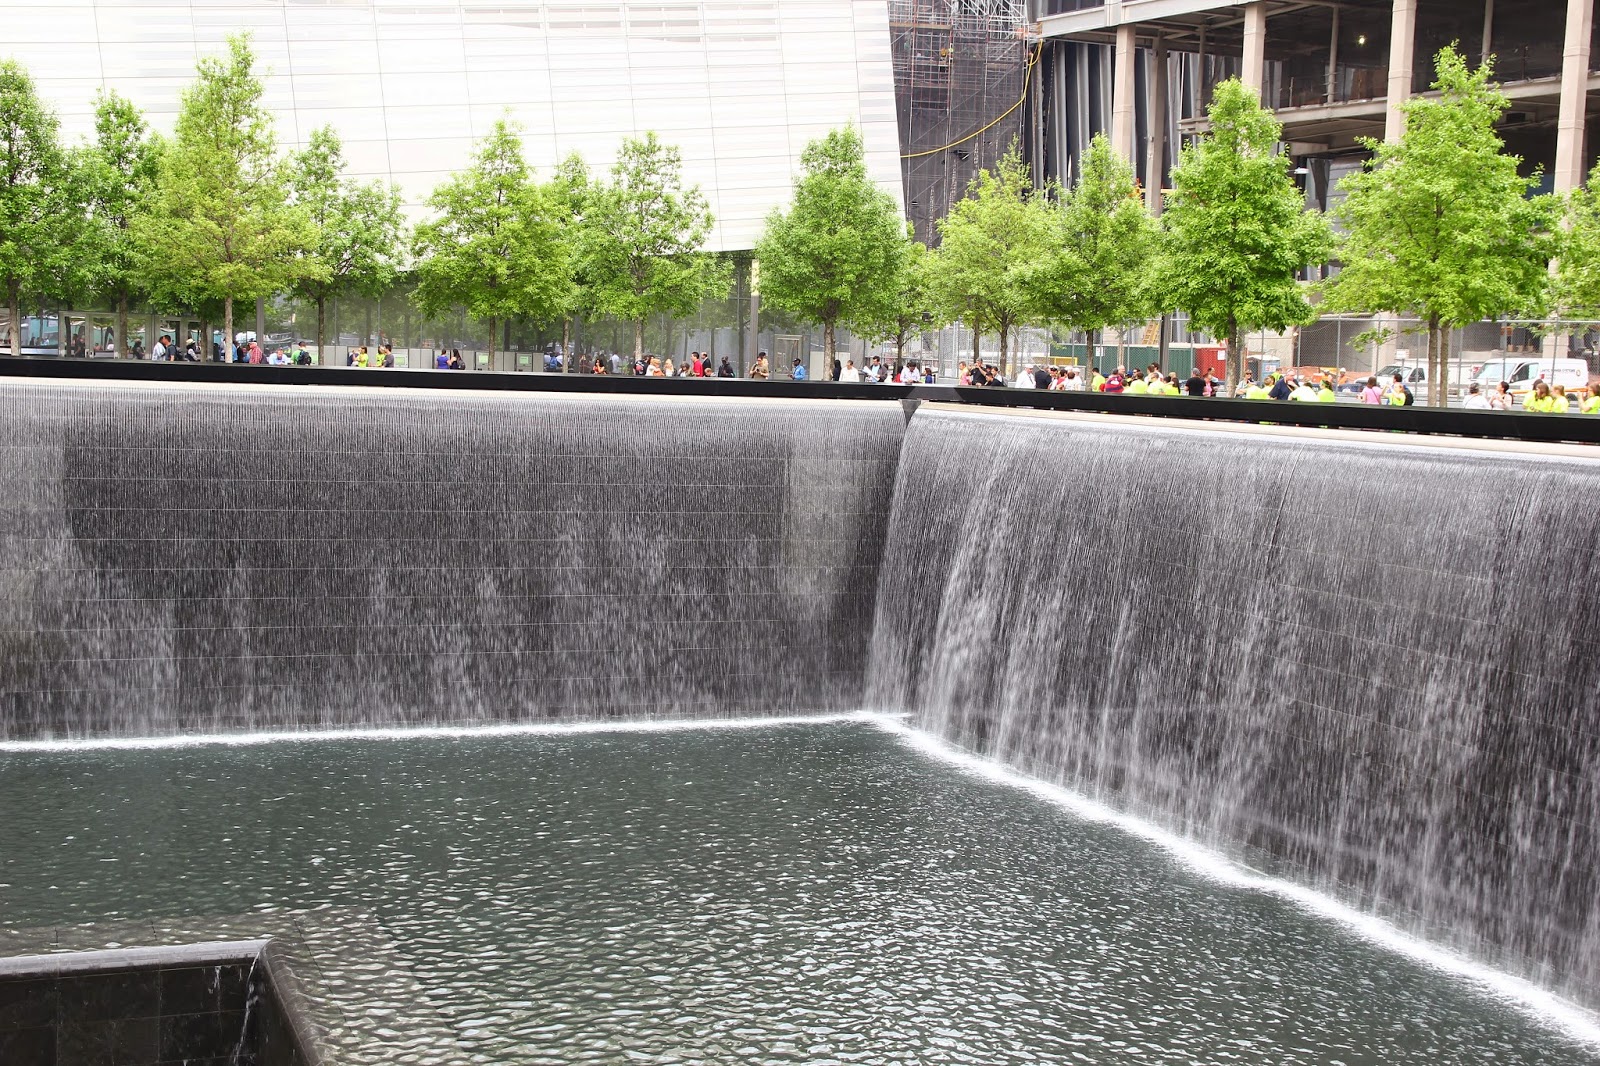 El National September 11 Memorial & Museum